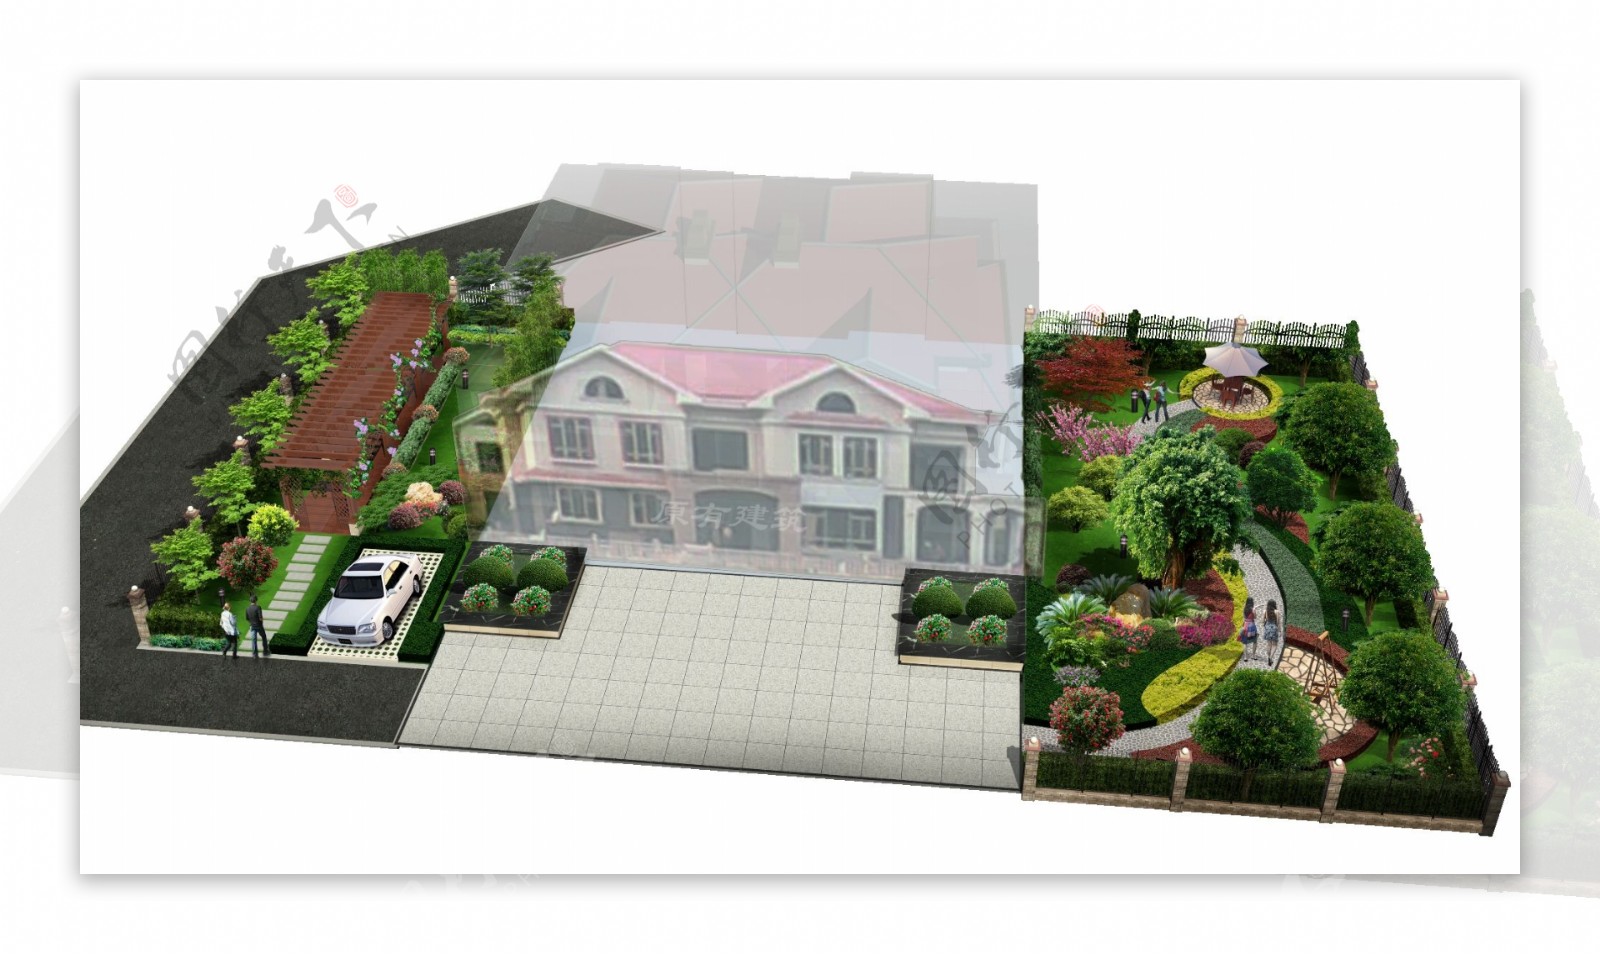 别墅绿化设计图片